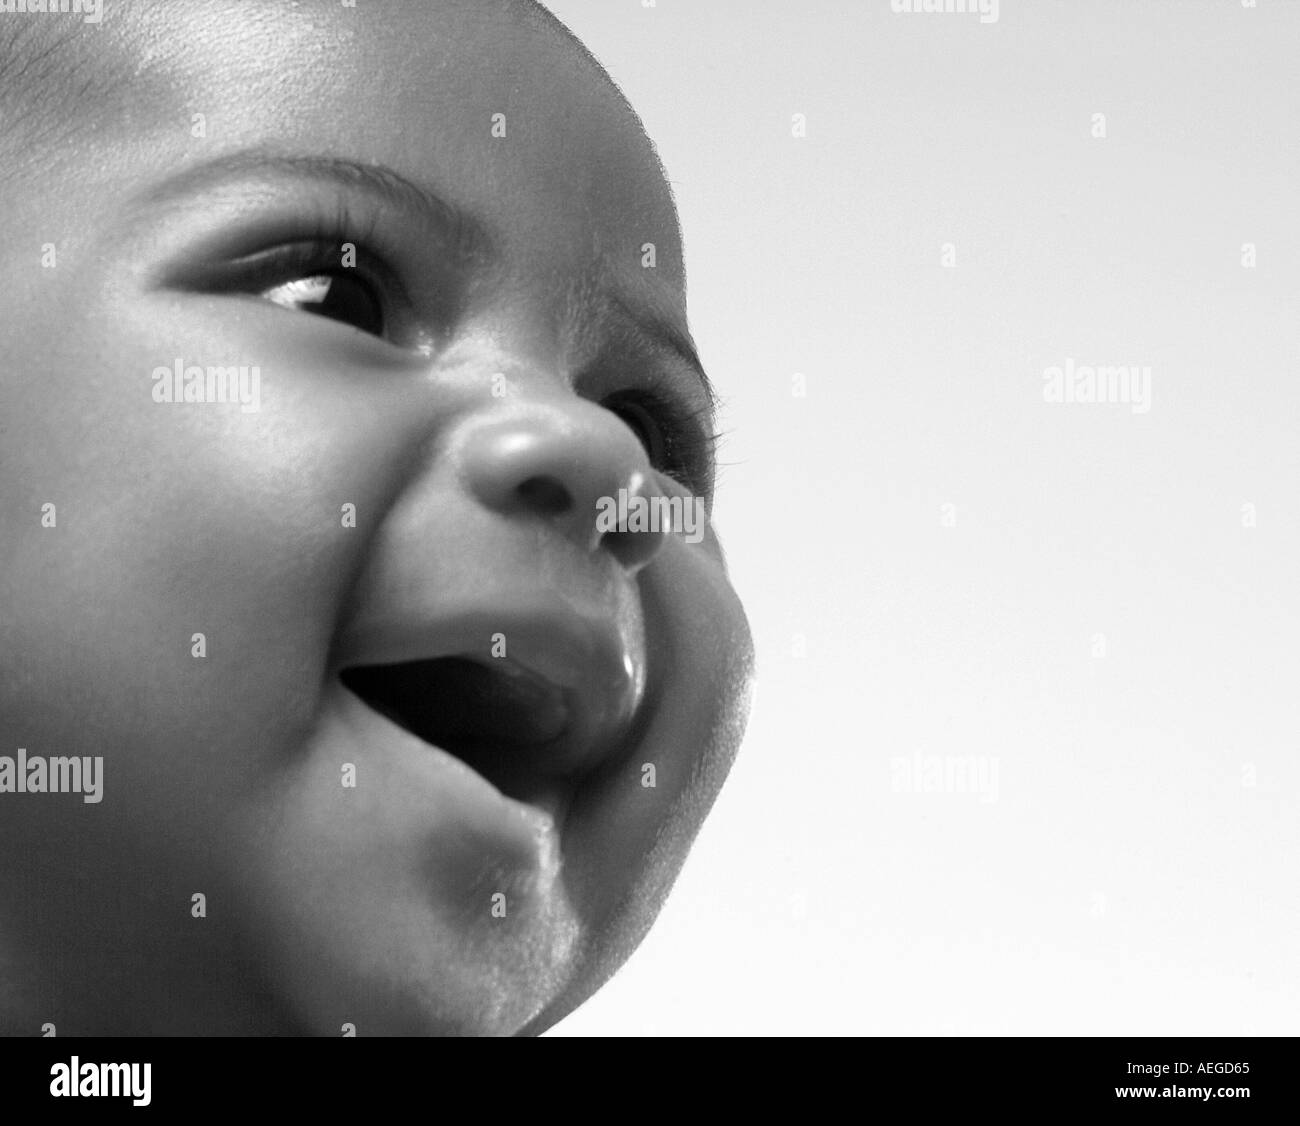 Baby s mondo boy sorridente sorriso felice felicità white b w l'espressione emozione persona persone kid bambino baby Foto Stock